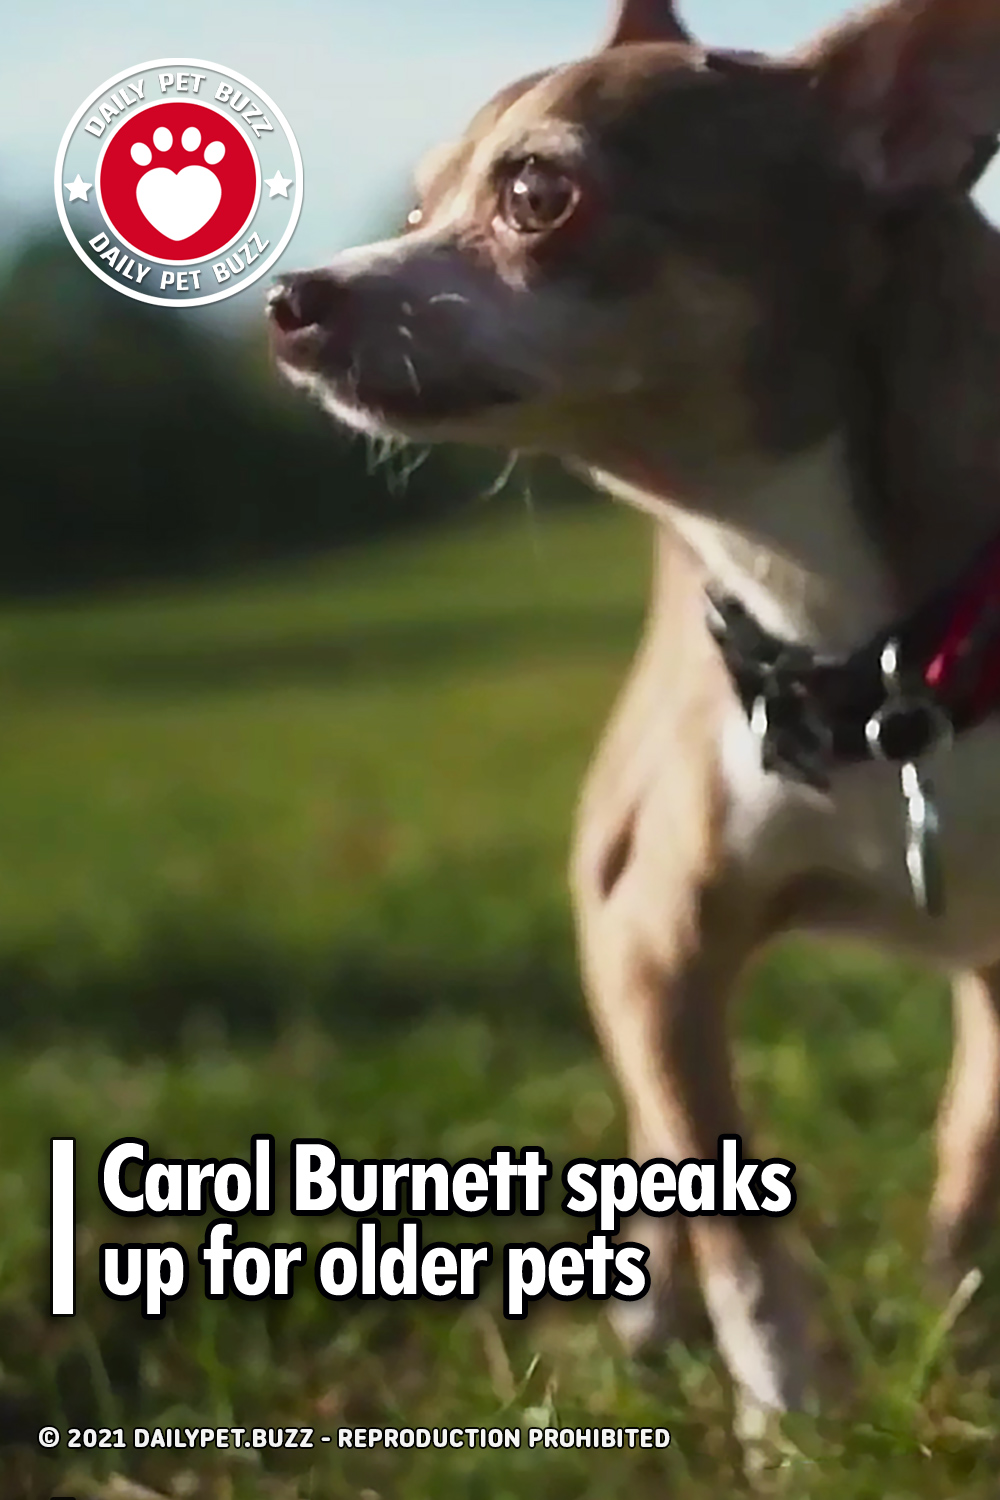 Carol Burnett speaks up for older pets